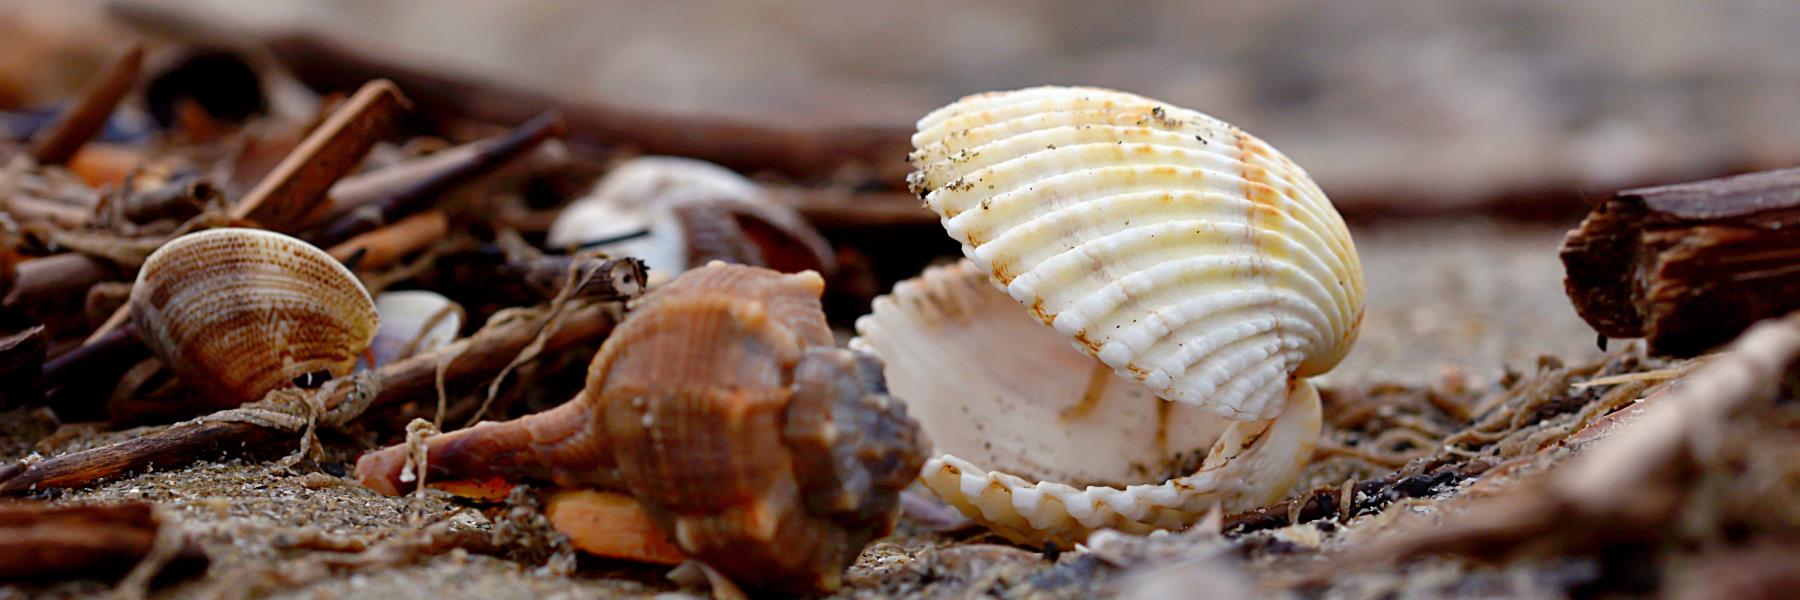 2 - Collect seashells